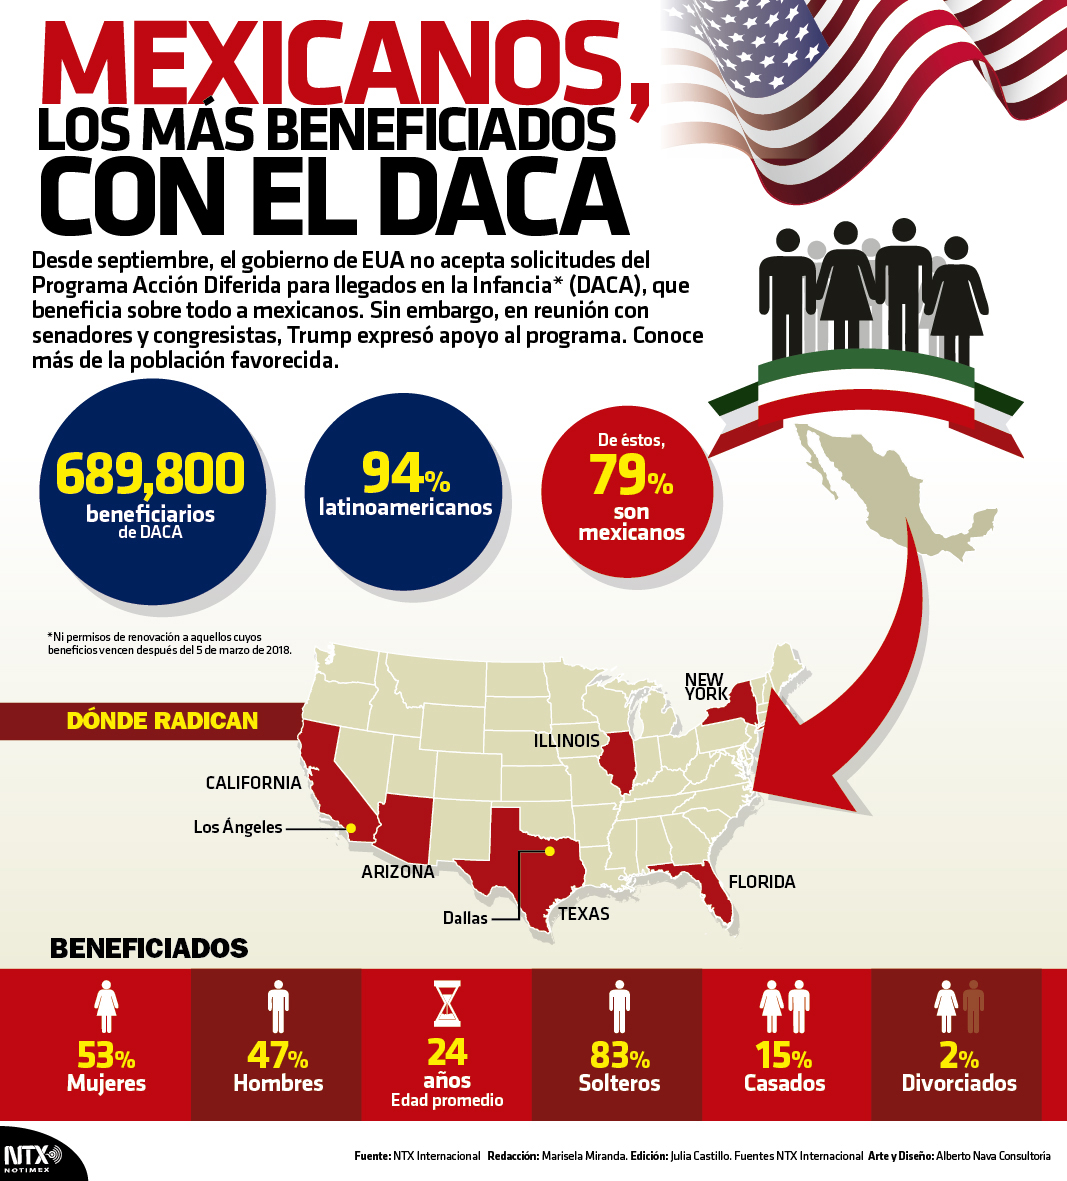 Mexicanos los ms beneficiados con el DACA